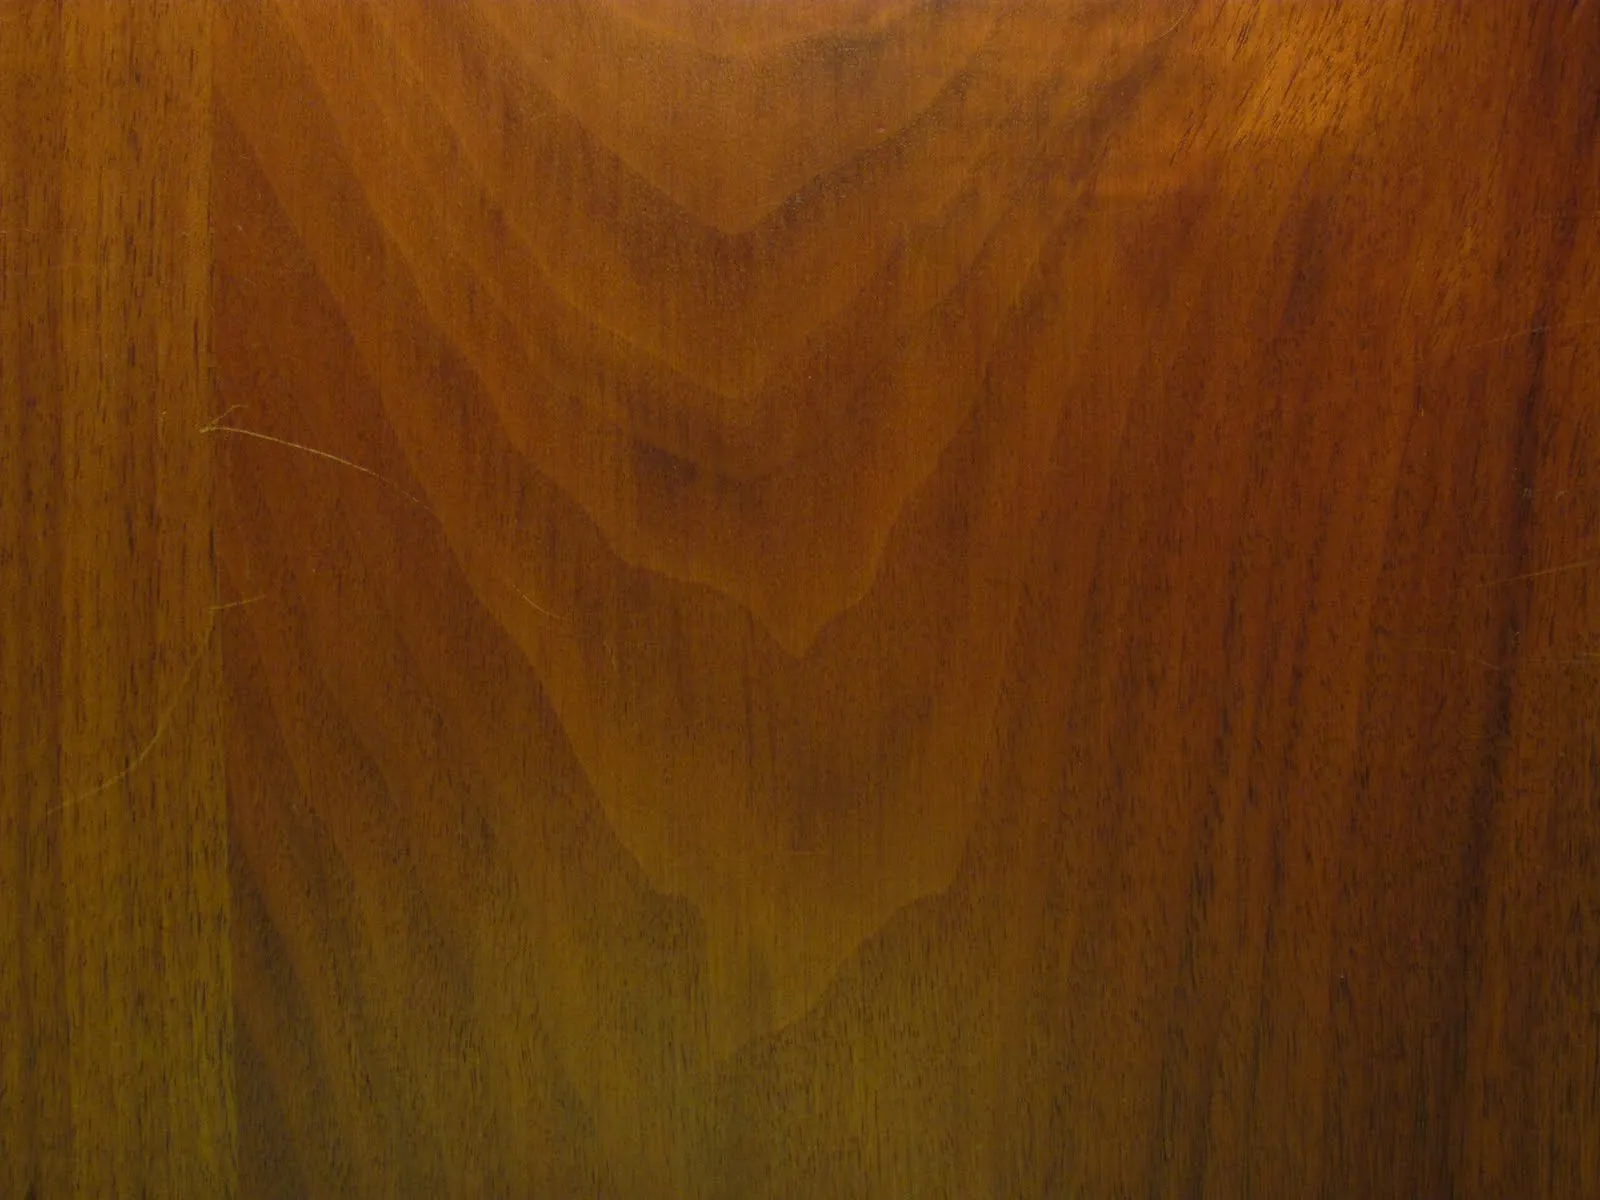 Texturas de Madera [Wood Texture] | Fotos e Imágenes en FOTOBLOG X